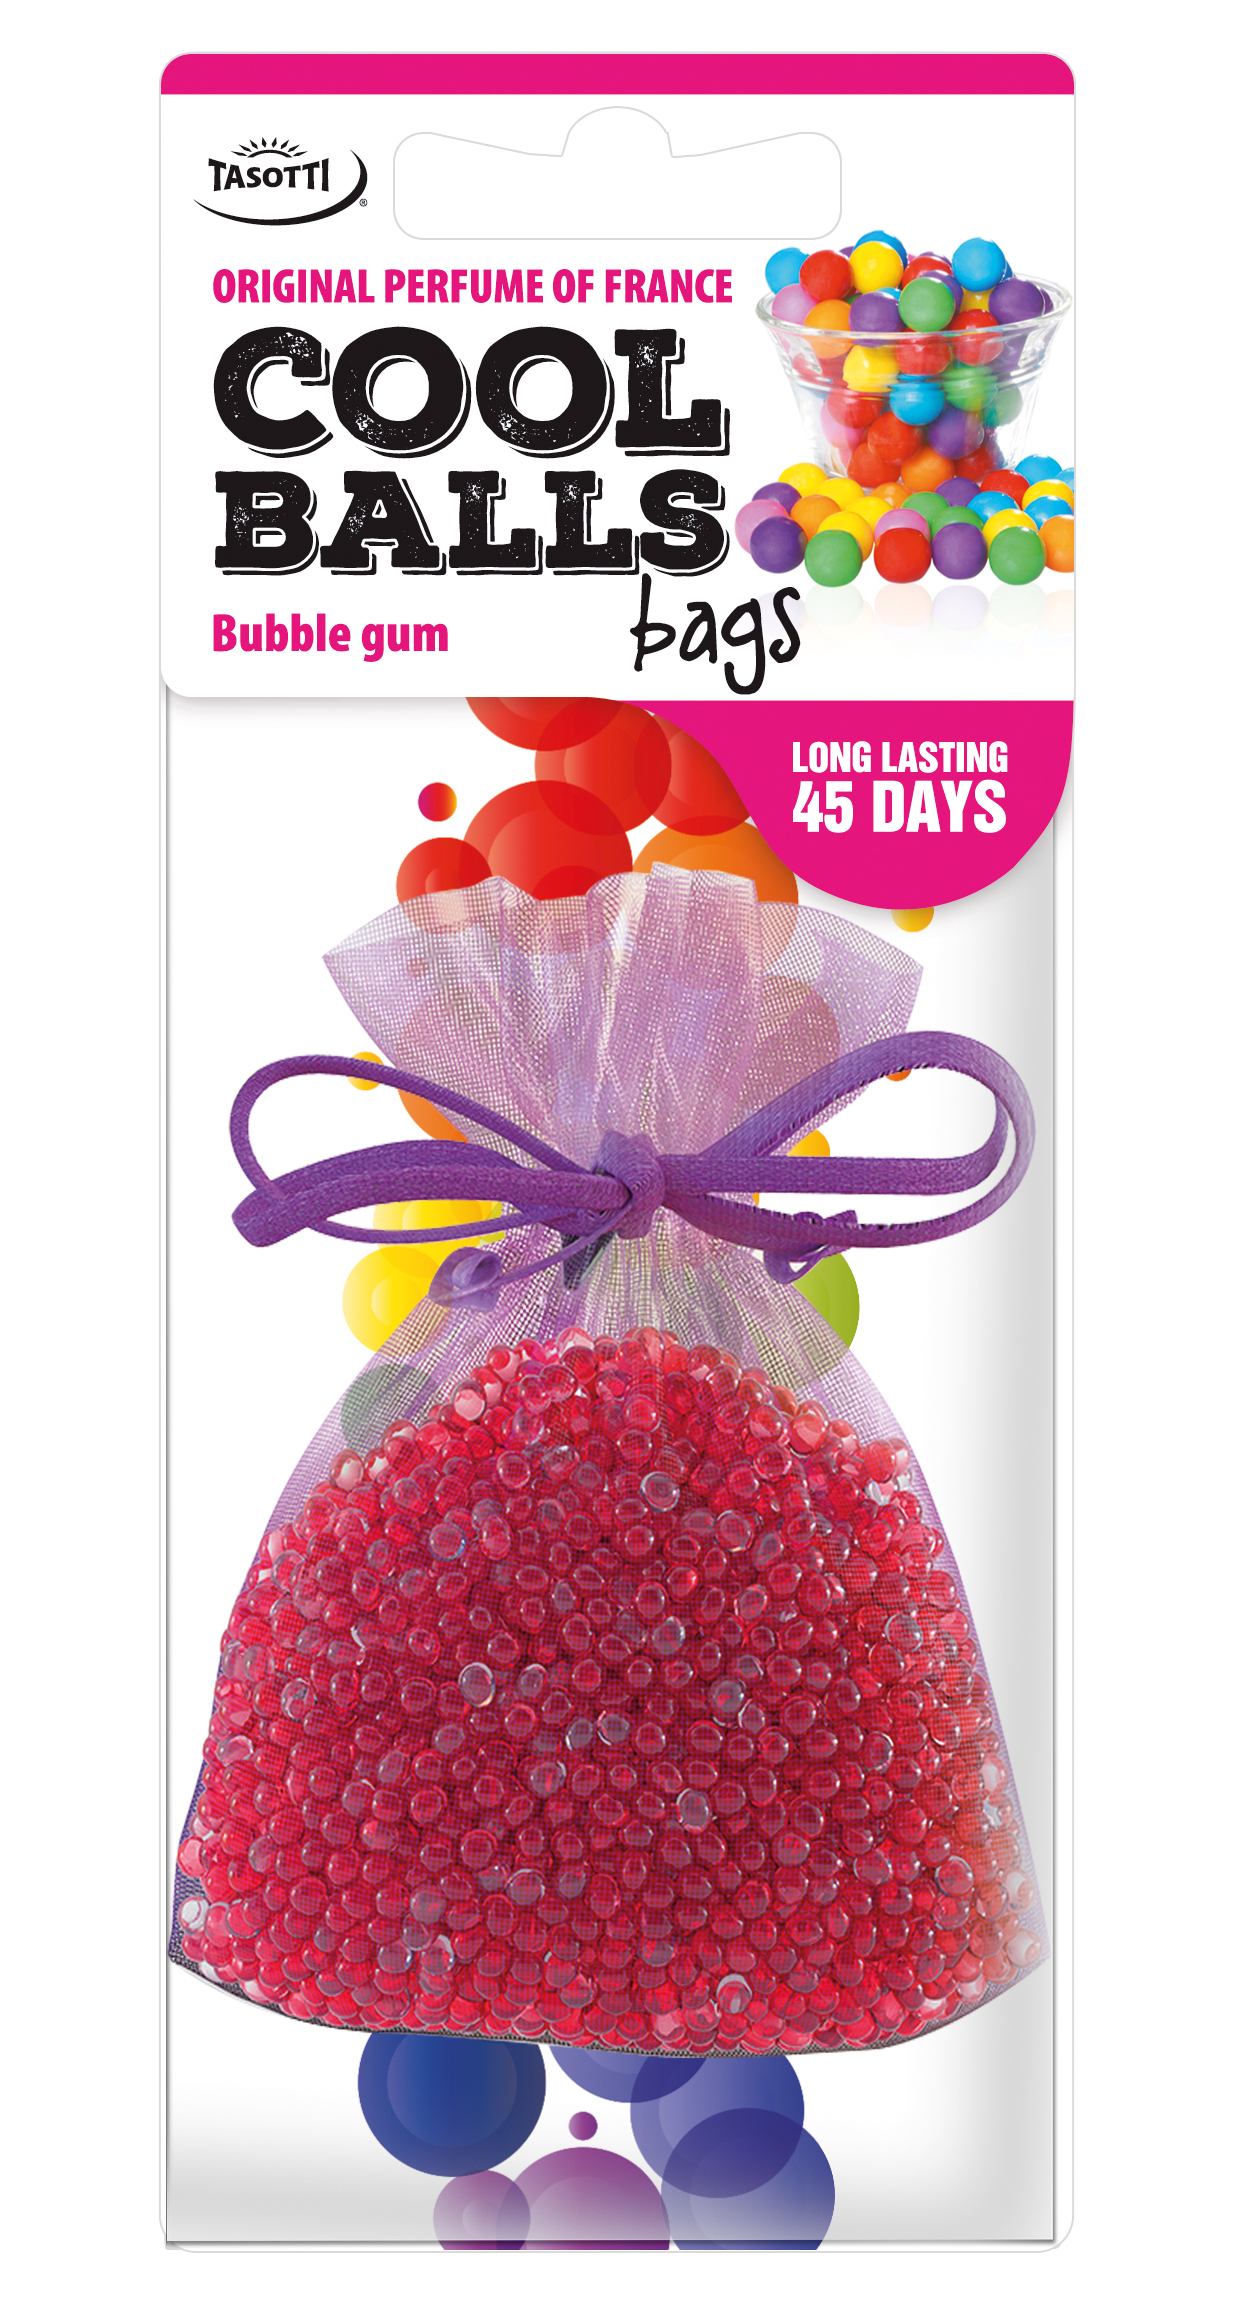 Cool - Bubble gum